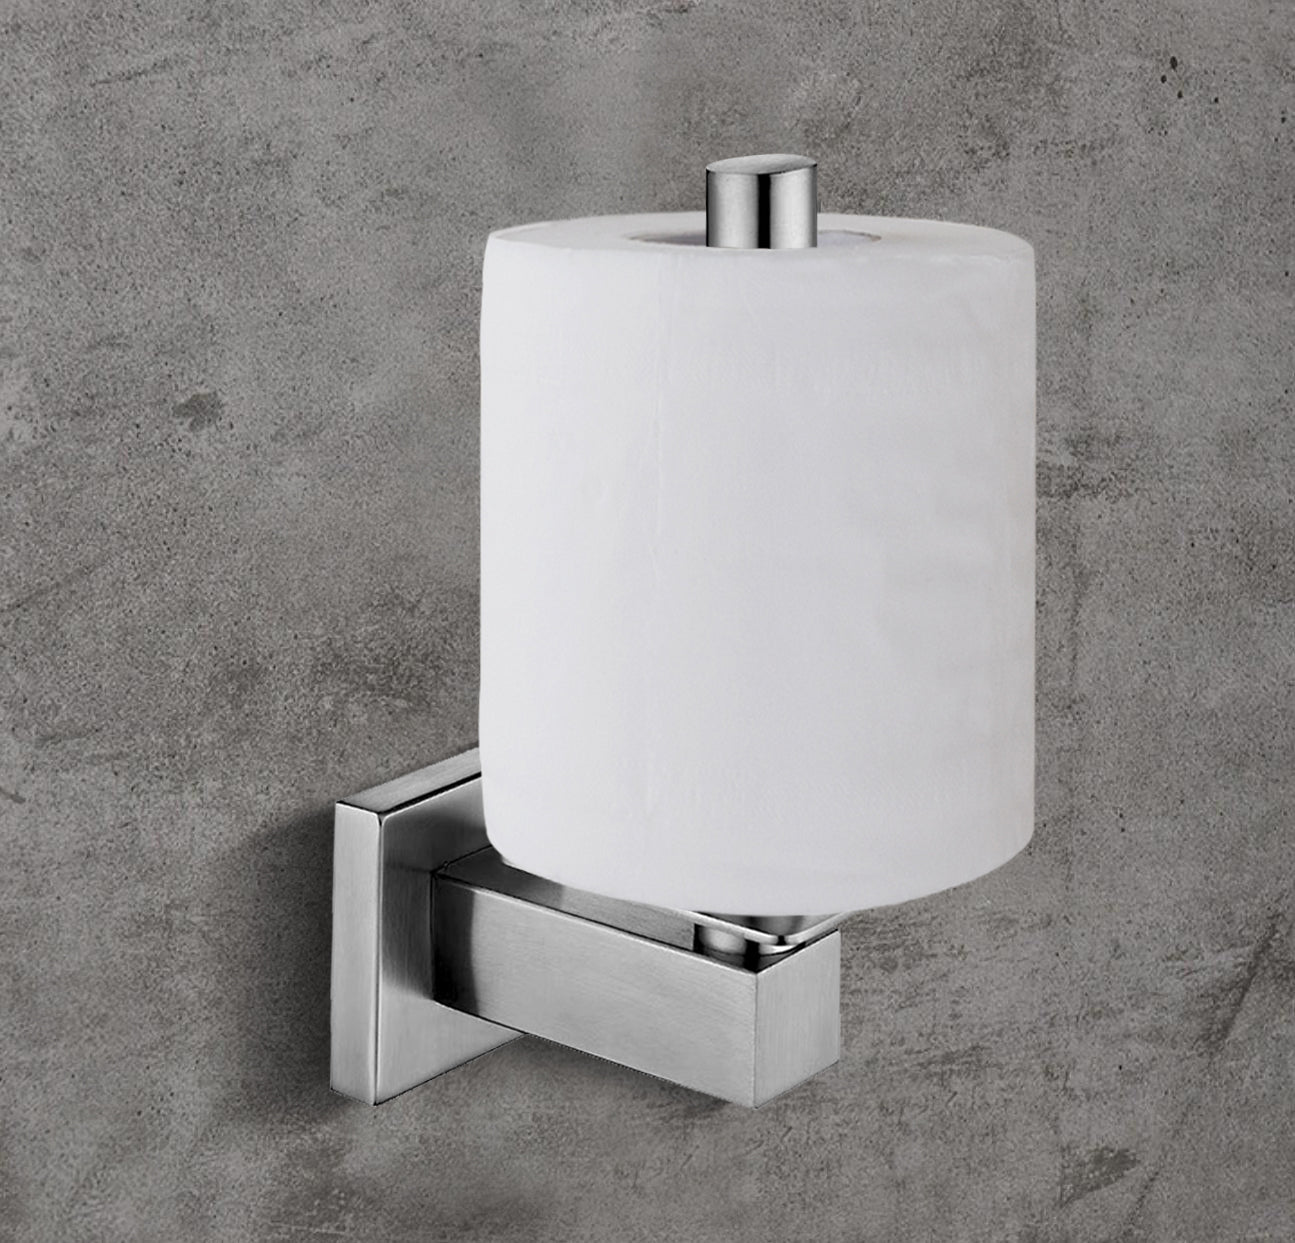 Lolypot Toilet Paper Holder Toilet Roll Holder Brushed Vertical WC